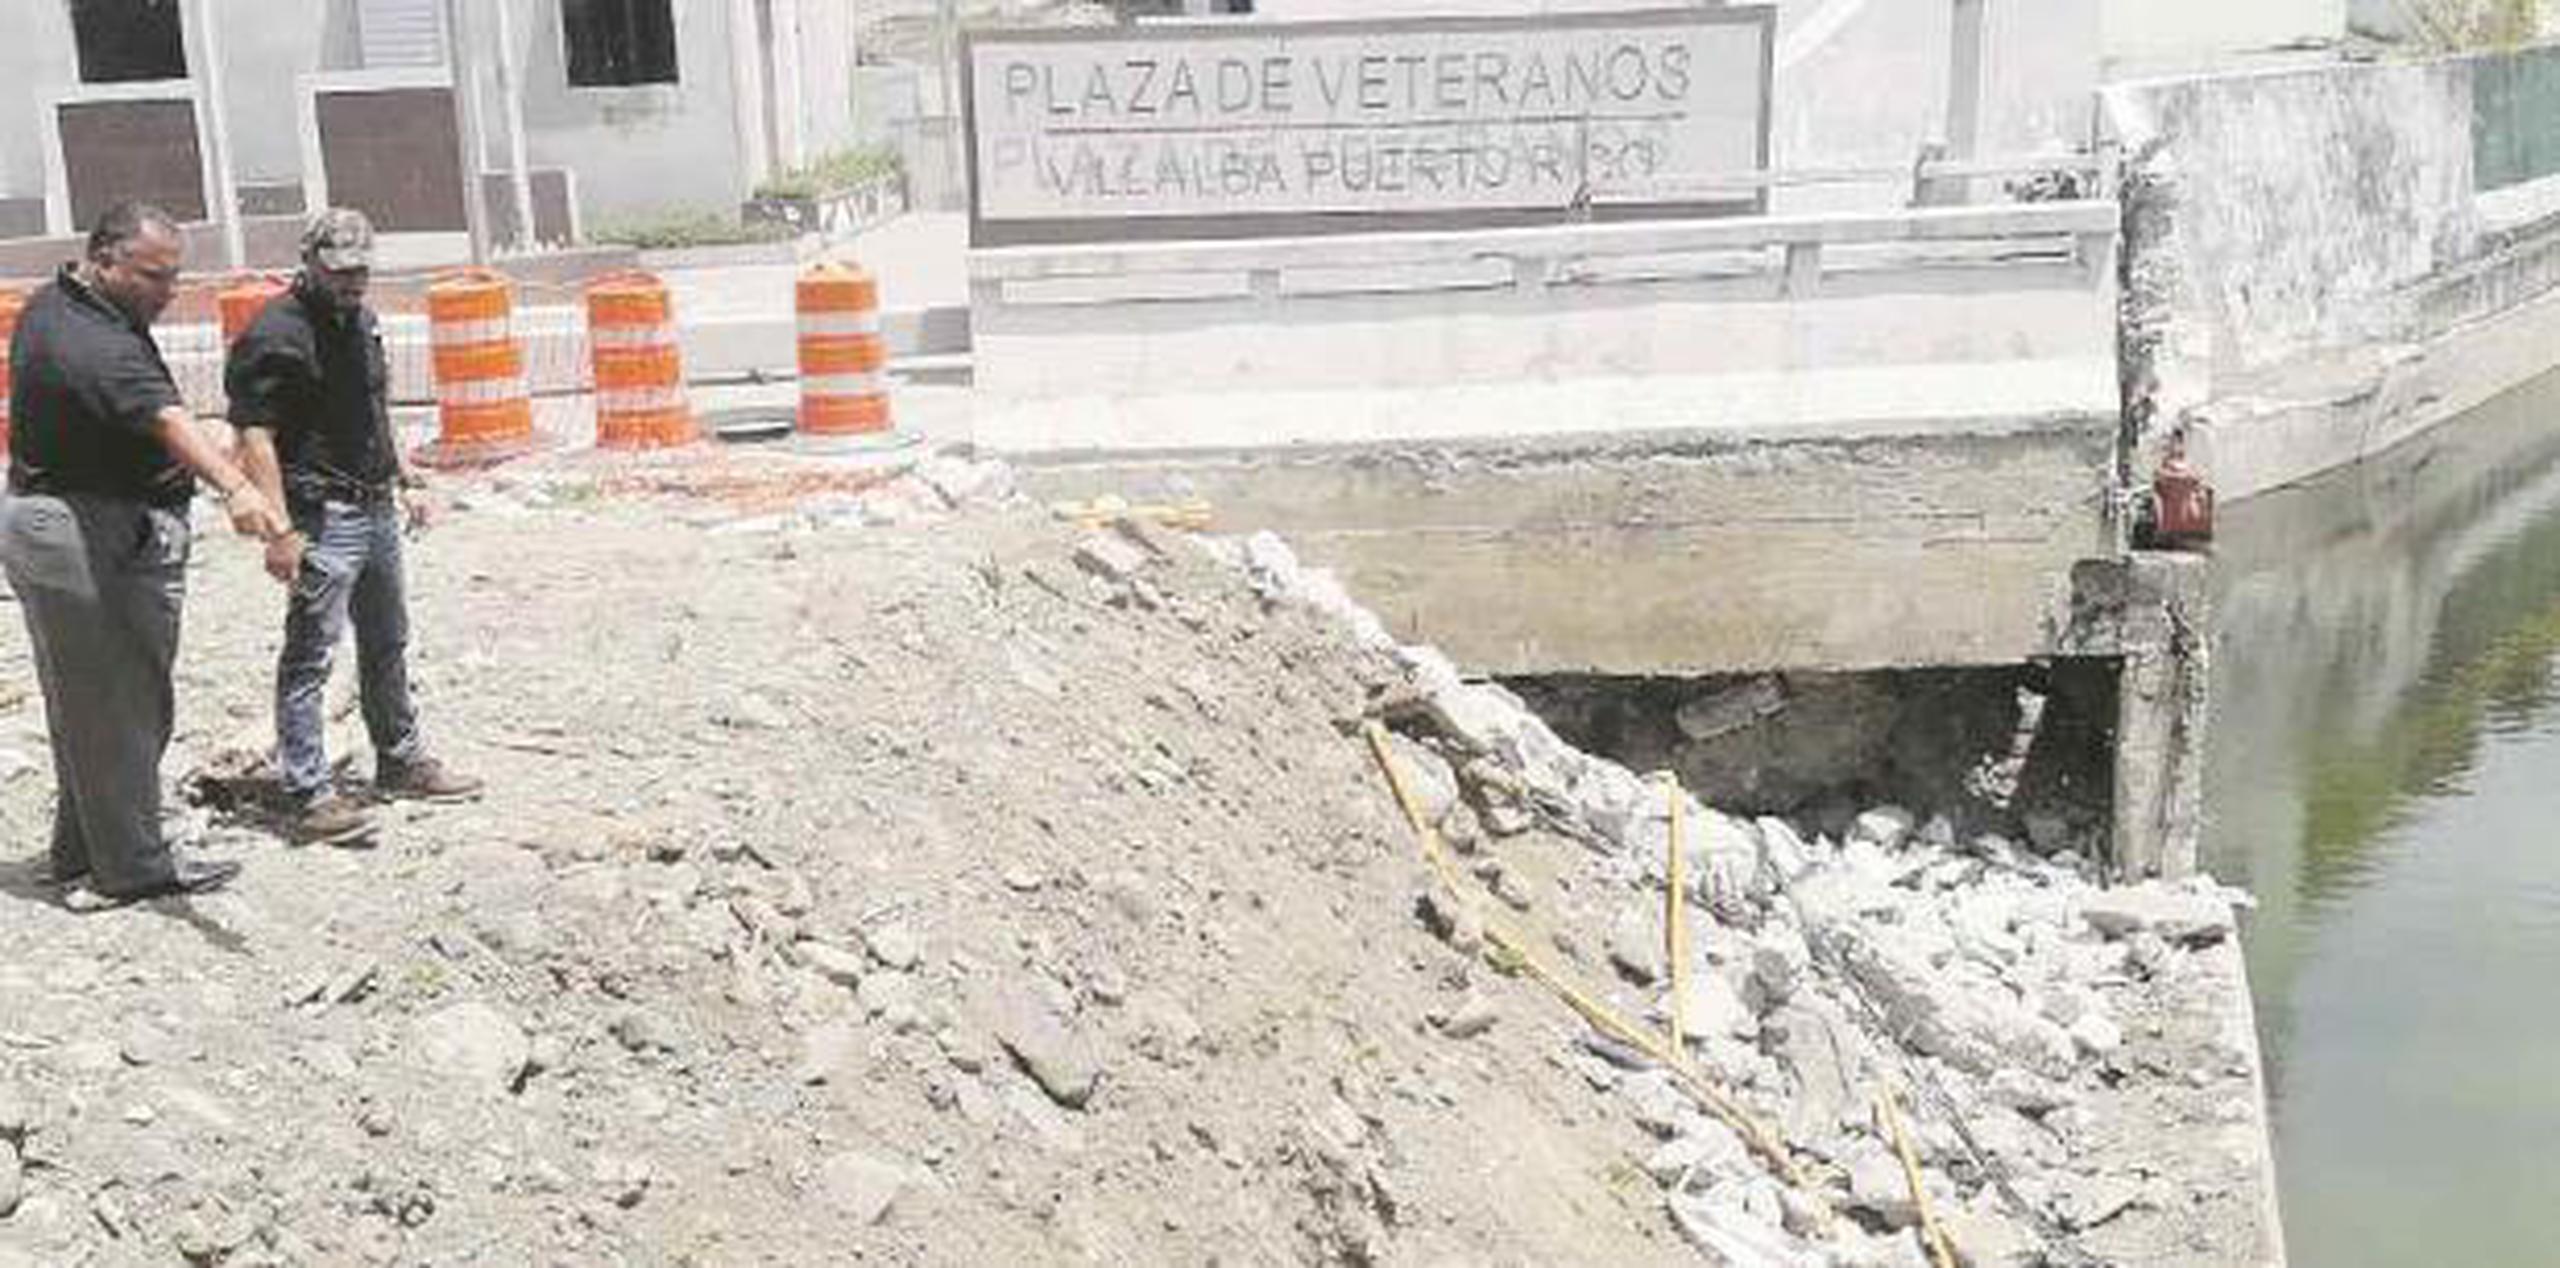 La Autoridad de Carreteras y Transportación (ACT), espera terminar con ese proyecto en noviembre de este año, según lo confirmó el ingeniero Heriberto Cosme Rivera, supervisor del área. (Suministrada)